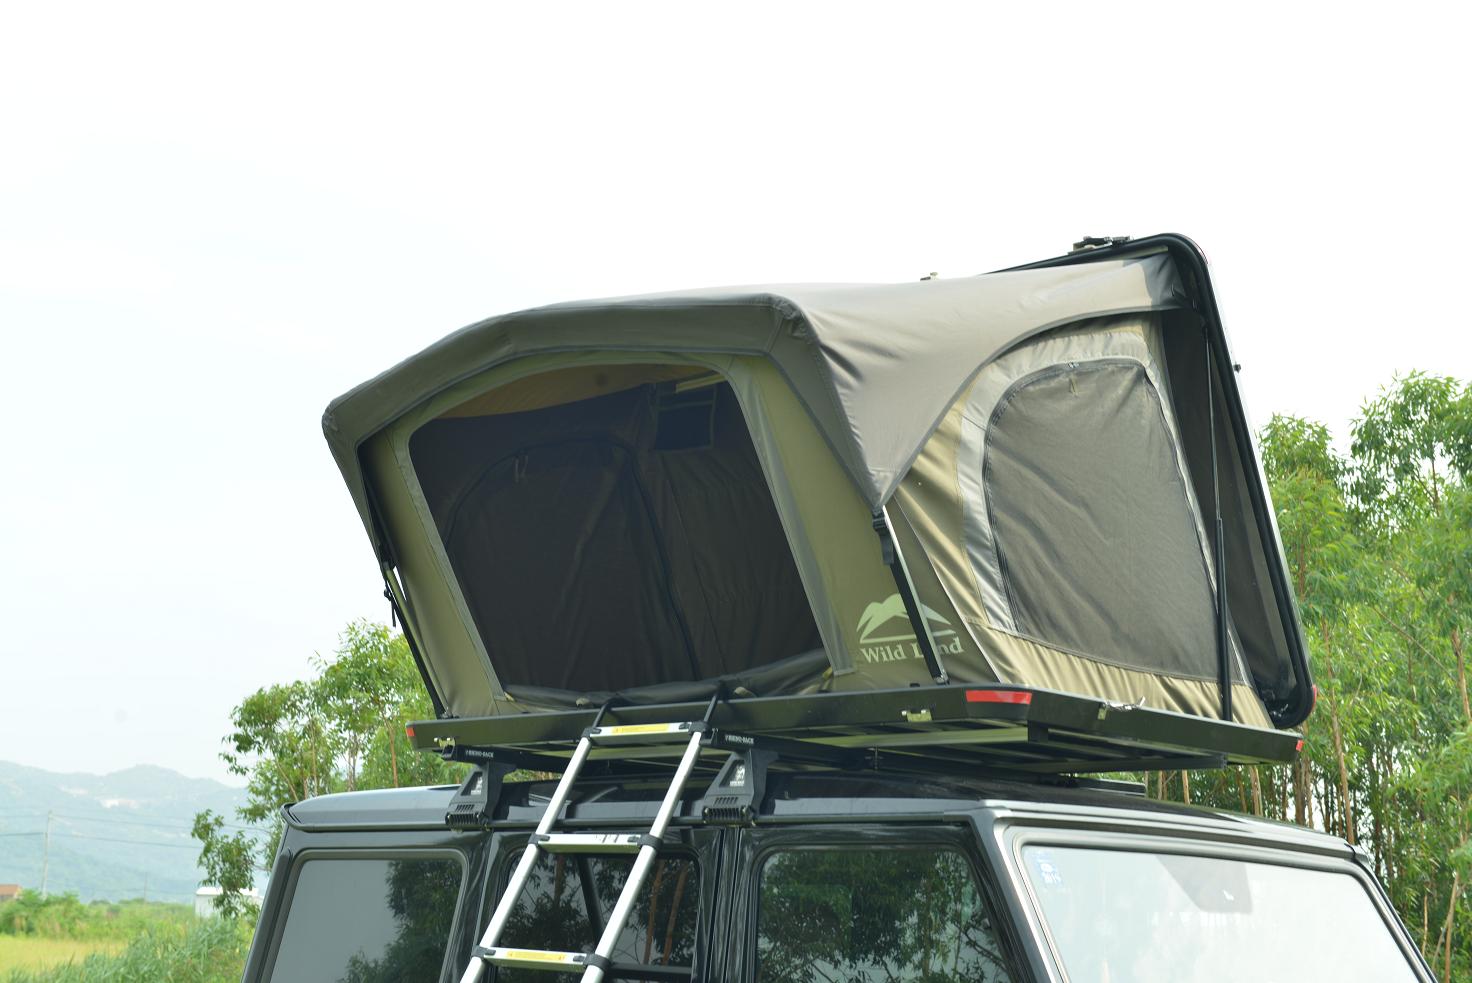 Палатка складная Desert Cruiser (на крышу автомобиля)